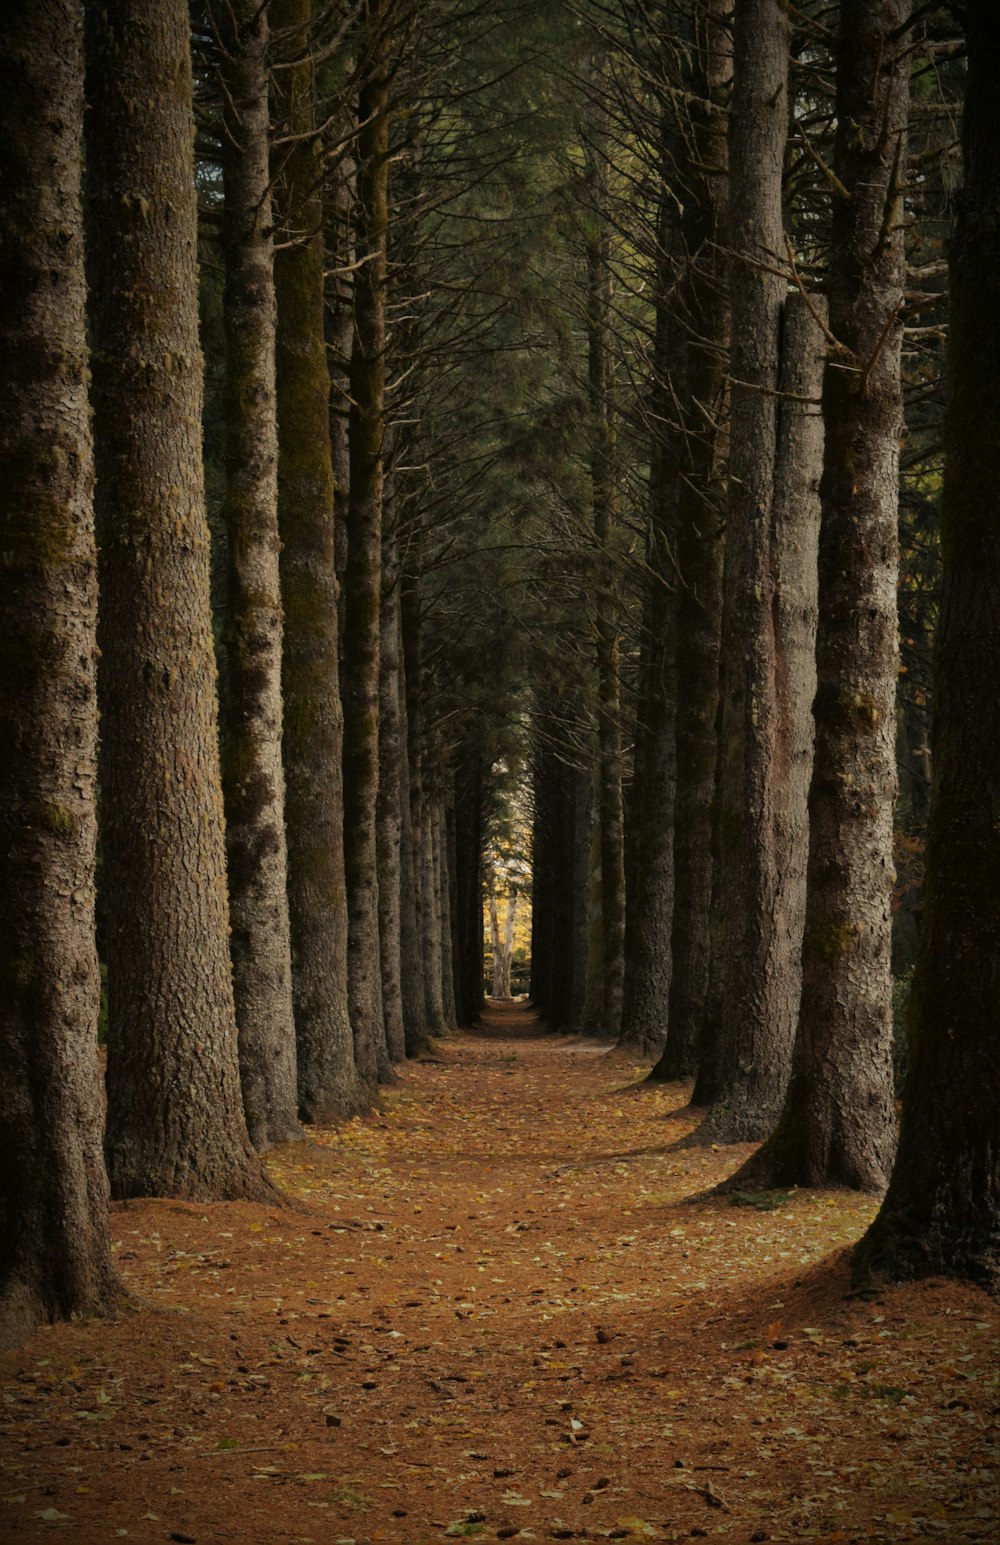 Un camino en medio de un bosque con muchos árboles